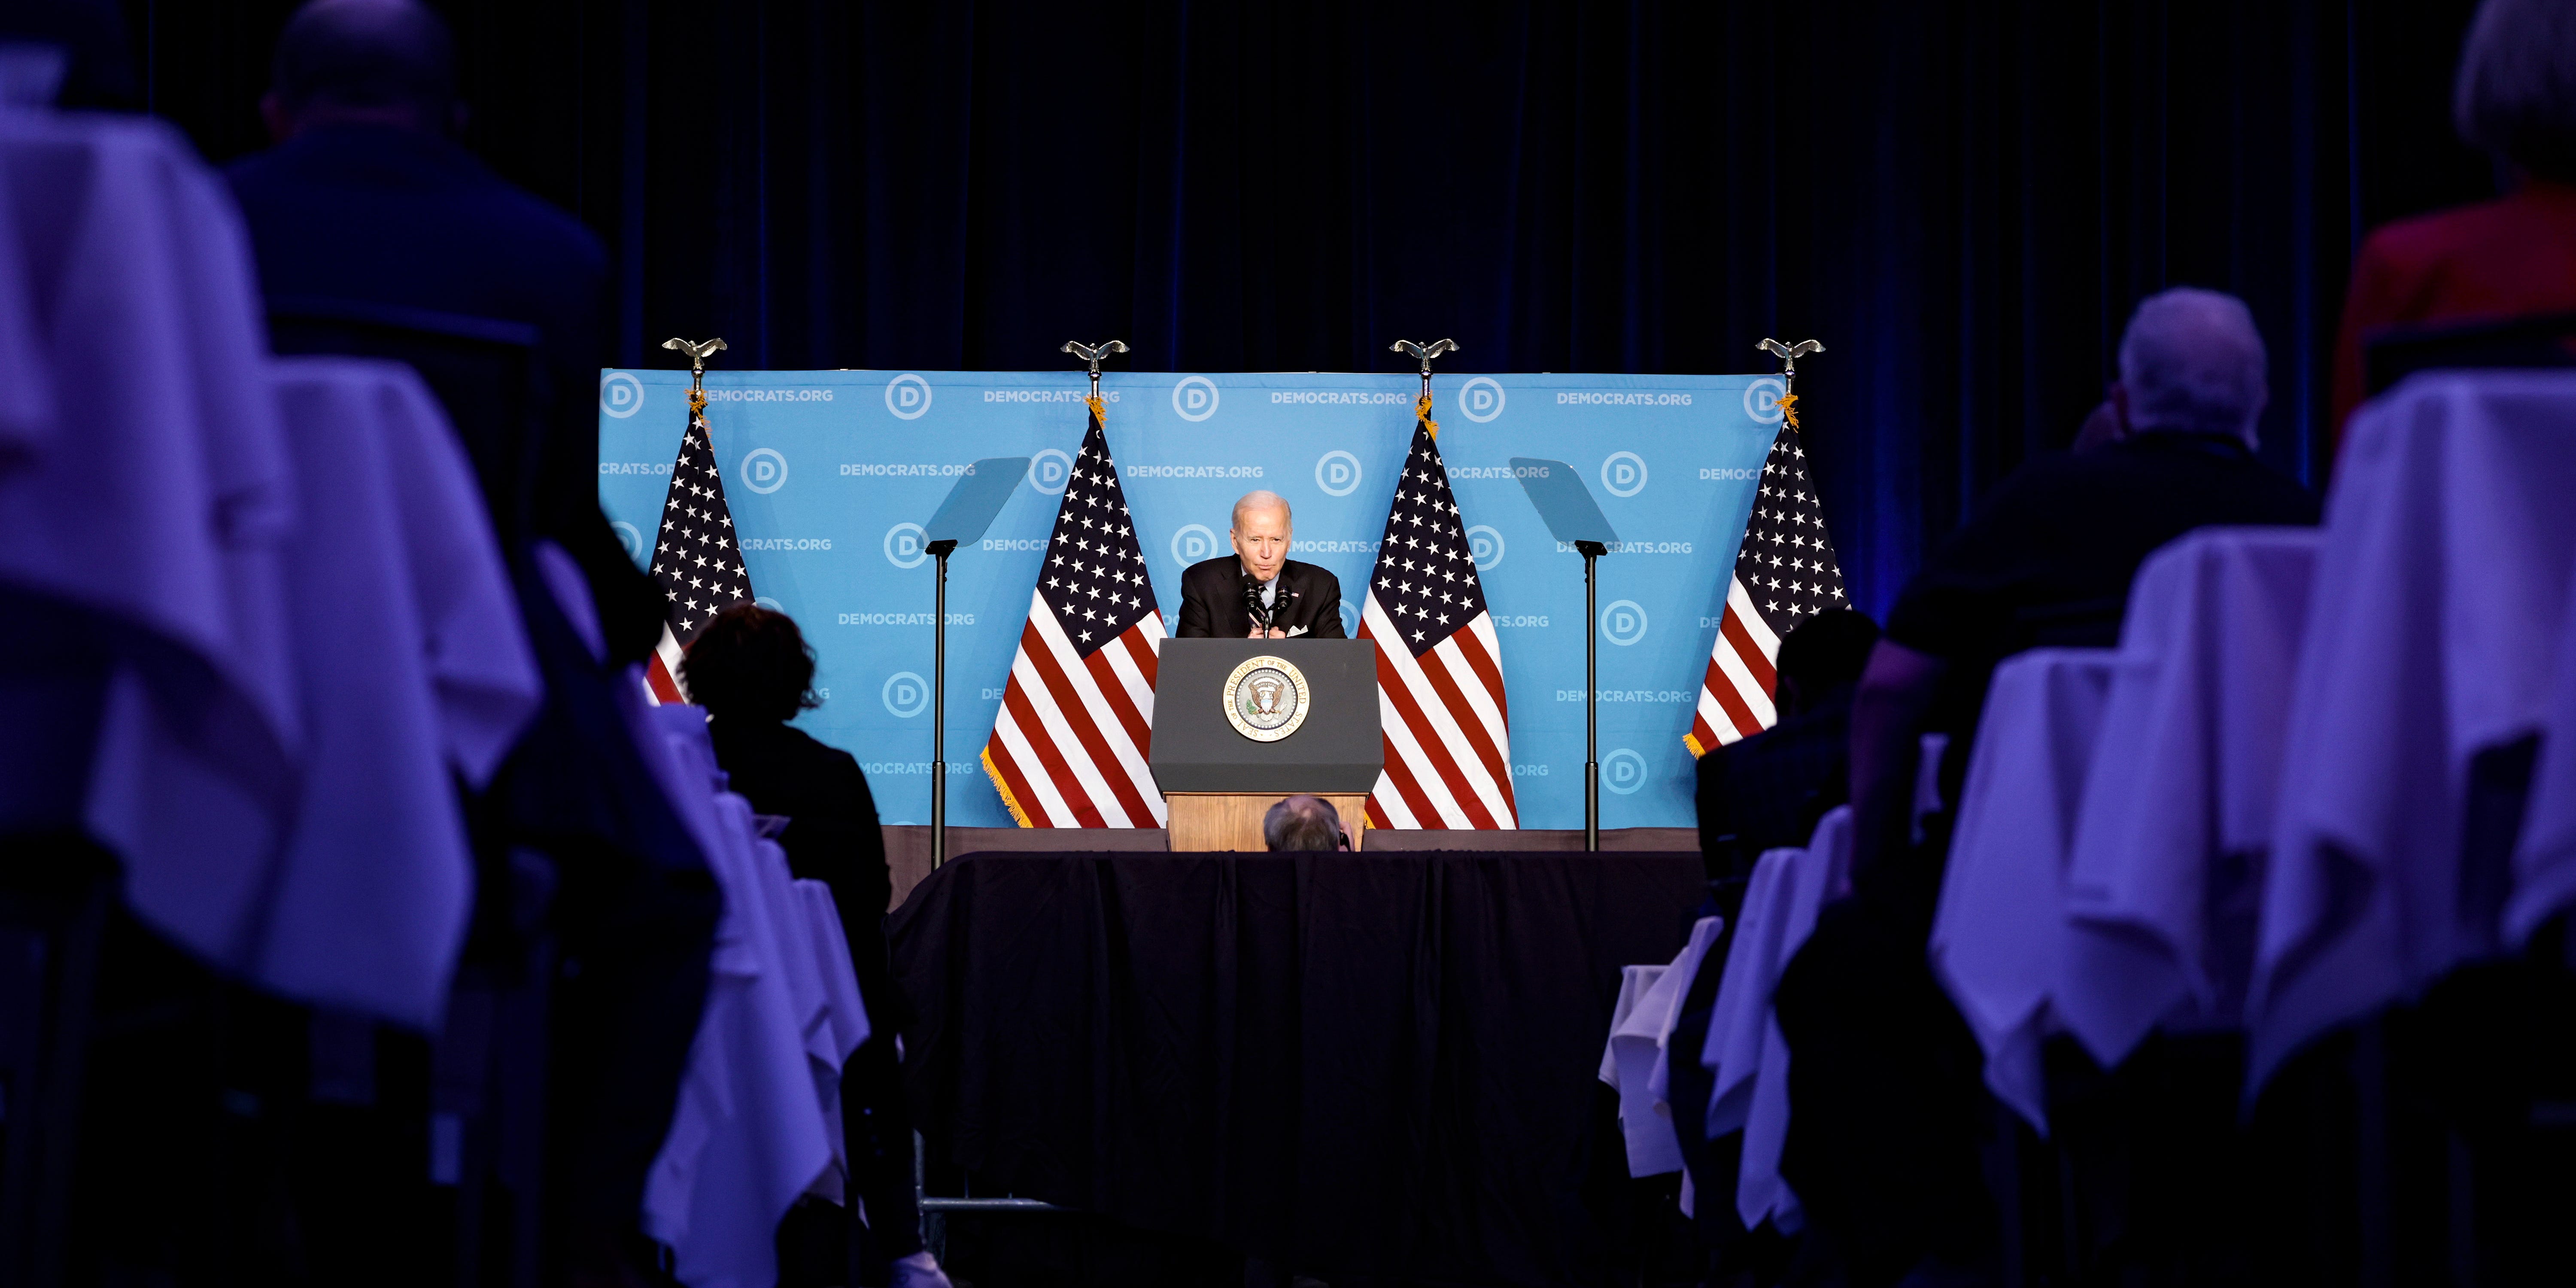 Präsident Joe Biden ist auf der Bühne zu sehen und spricht in einem Ballsaal des Hotels mit Mitgliedern des DNC.